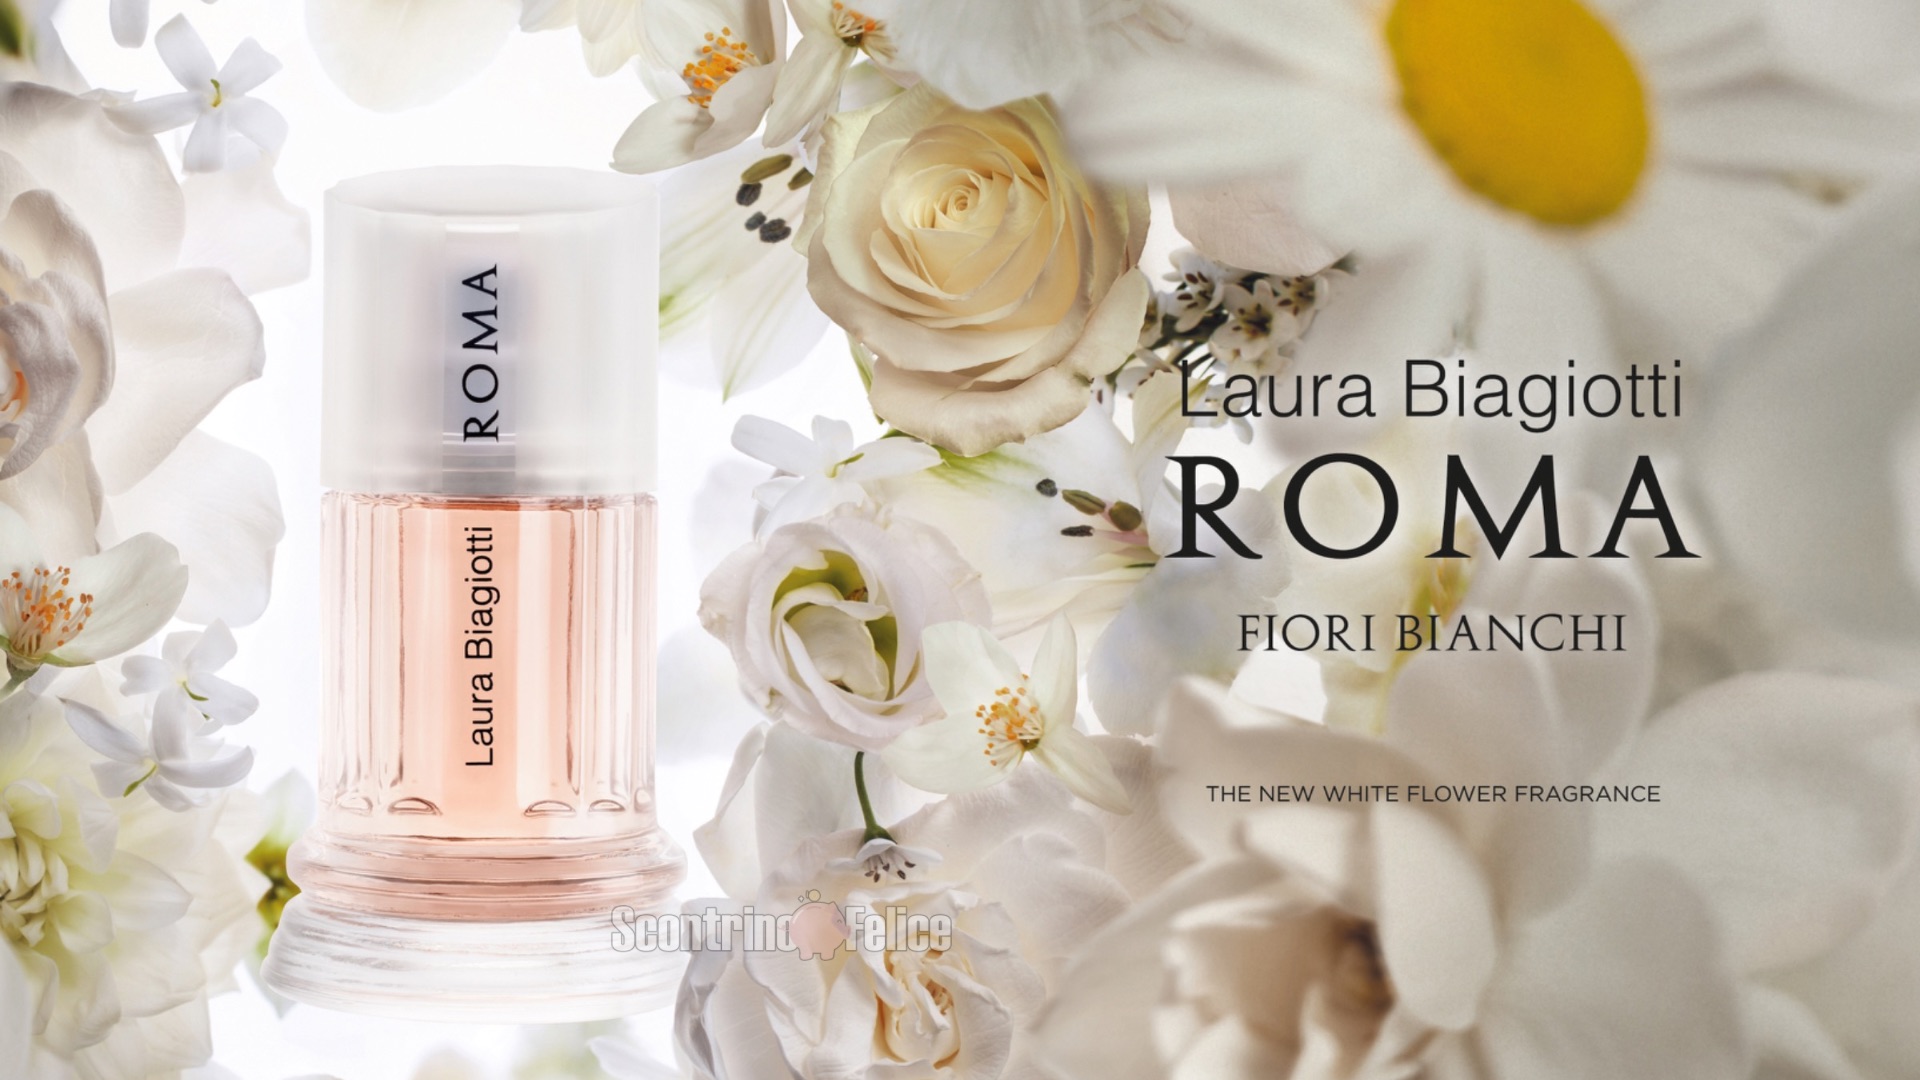 Concorso gratuito Laura Biagiotti “Roma fiori bianchi”: vinci bouquet e weekend in Provenza